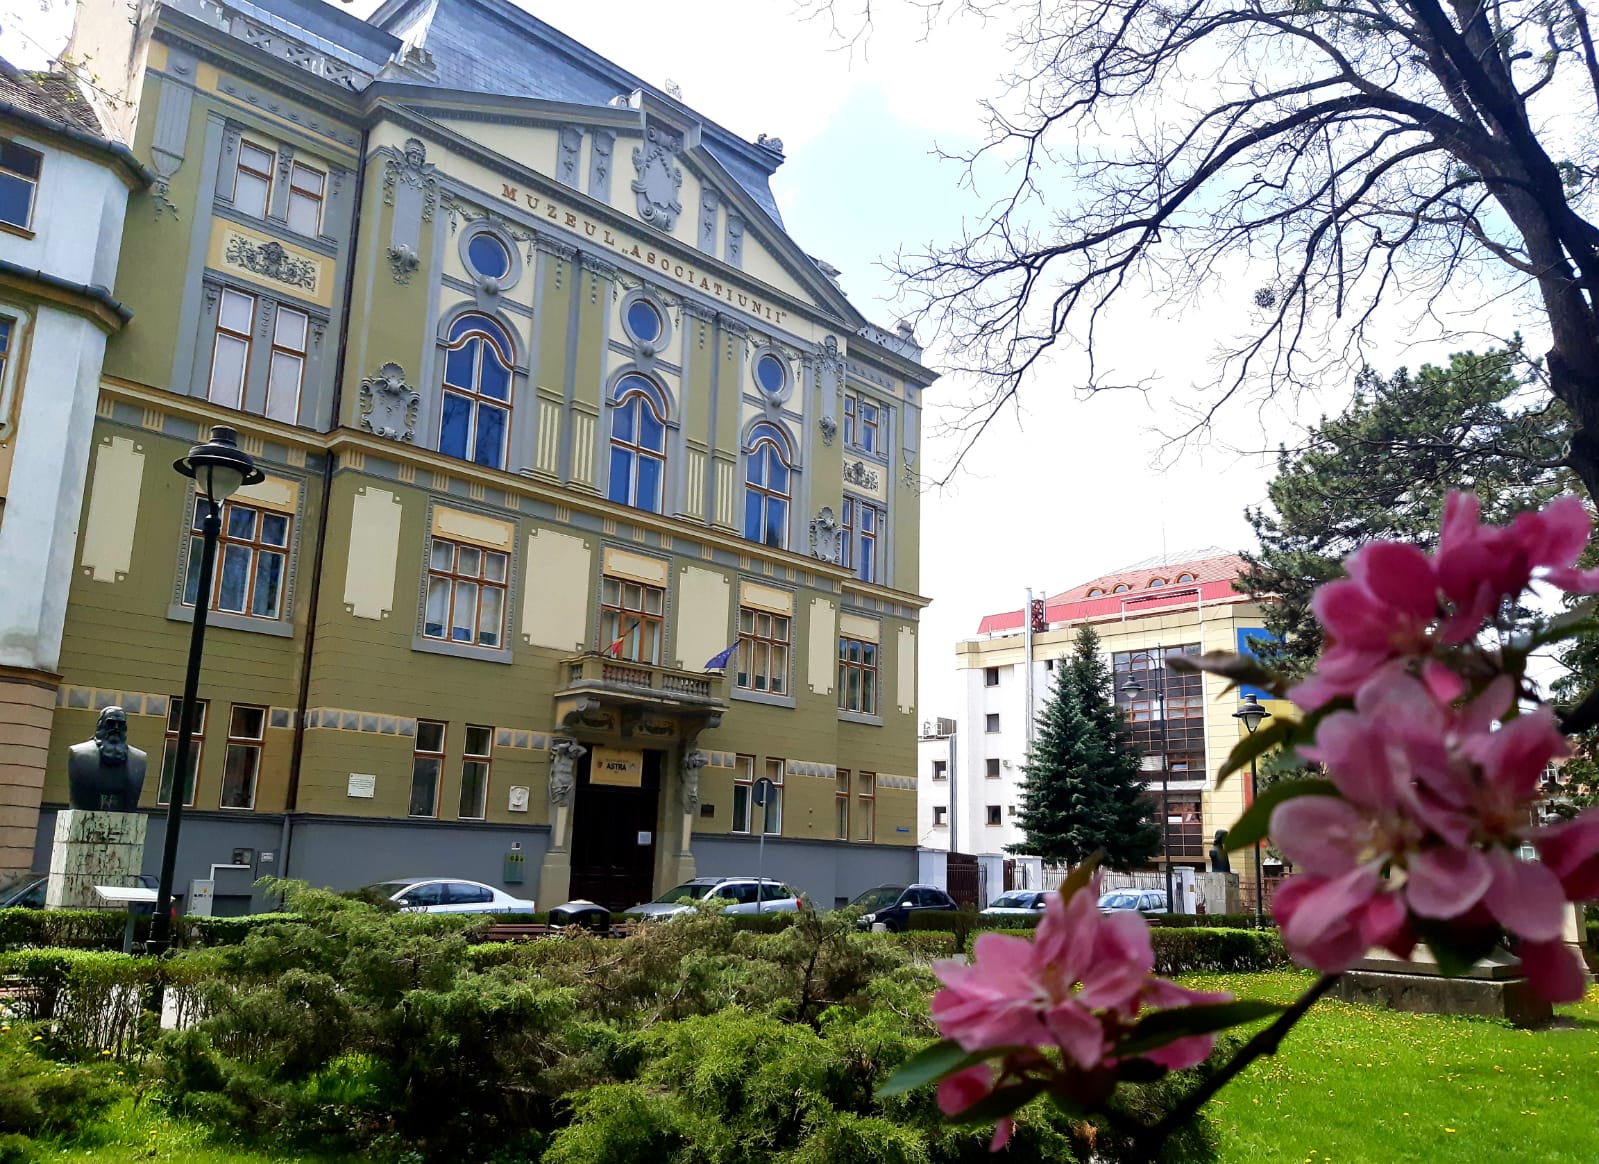 ŞTIRI SIBIU – Consiliul Județean Sibiu lansează concursul de proiecte de management pentru BIBLIOTECA JUDEȚEANĂ ASTRA SIBIU